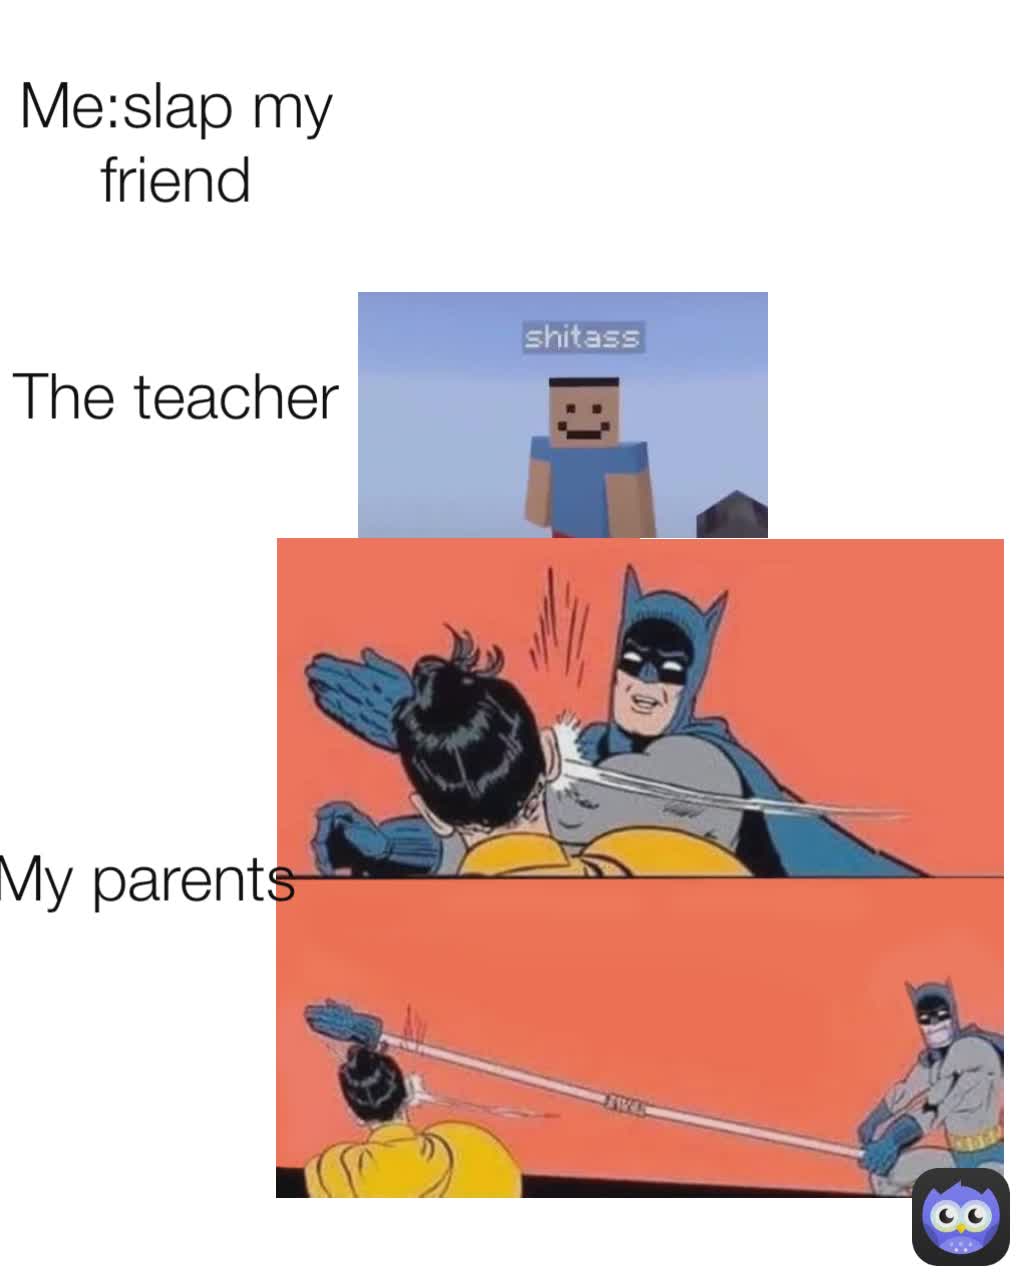 The teacher
 My parents
 Me:slap my friend
